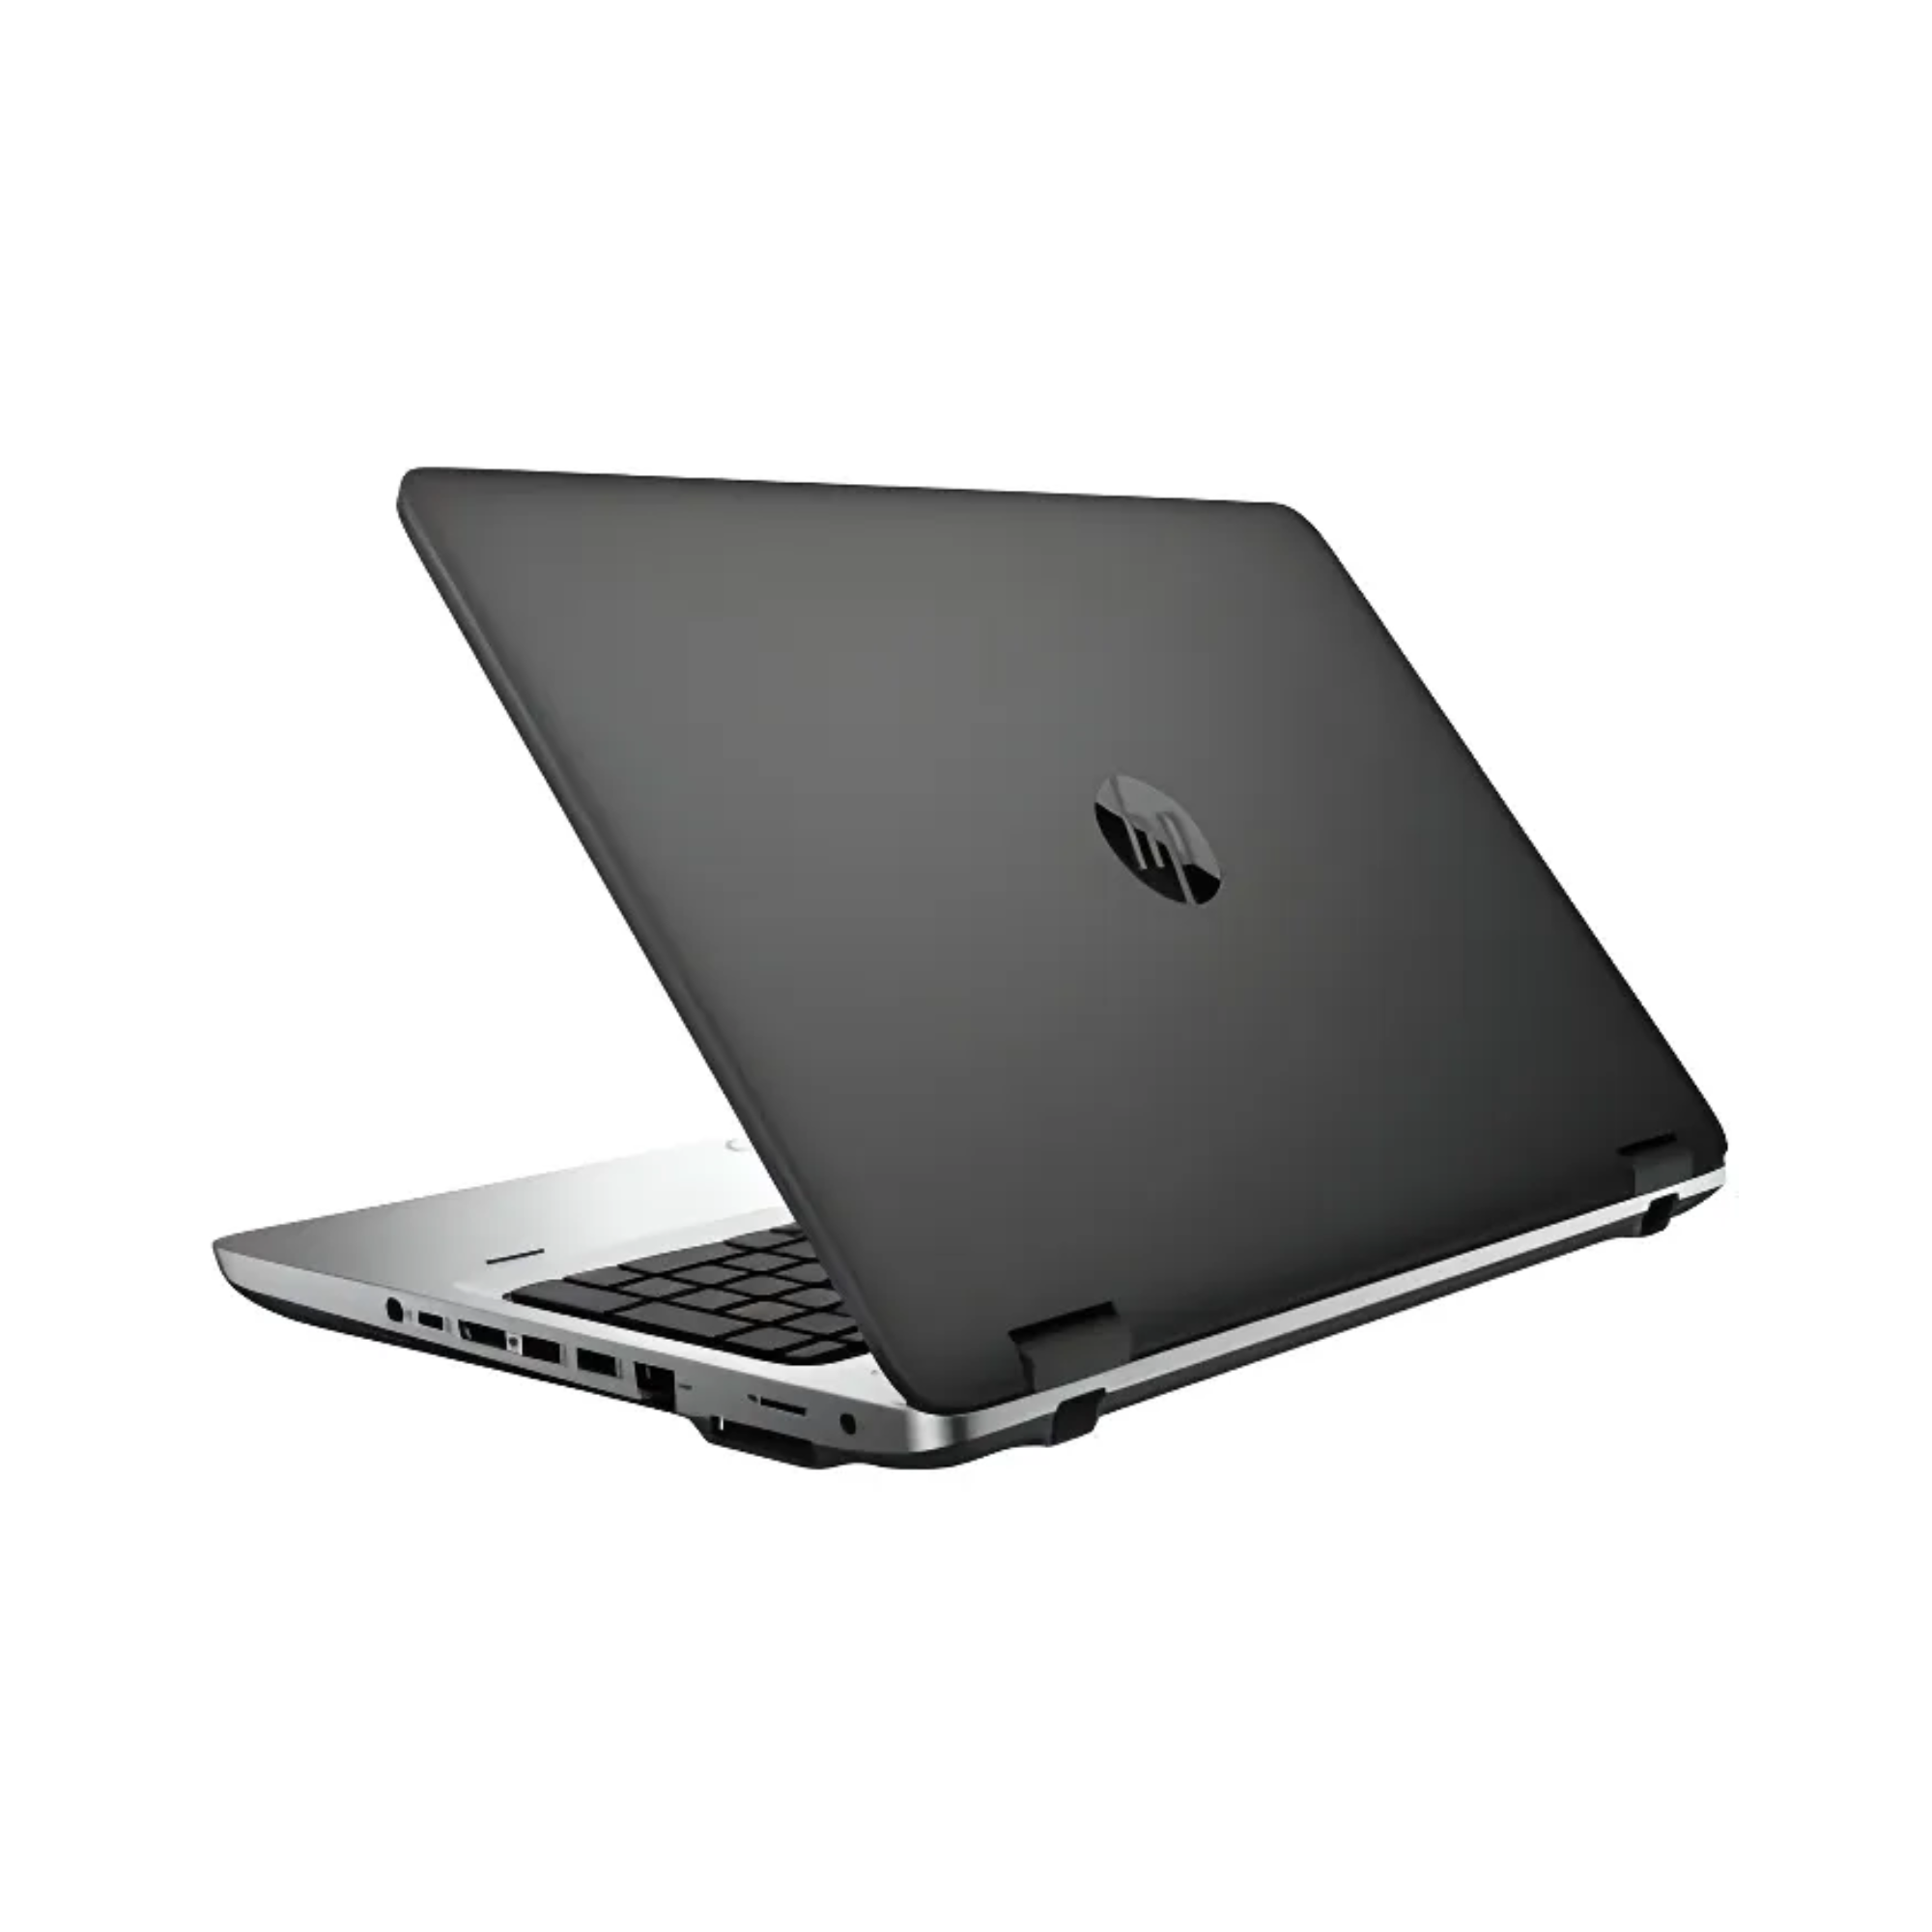 HP ProBook 650 G2 i5 (6.ª generación) 8 GB RAM 256 GB SSD 15,6